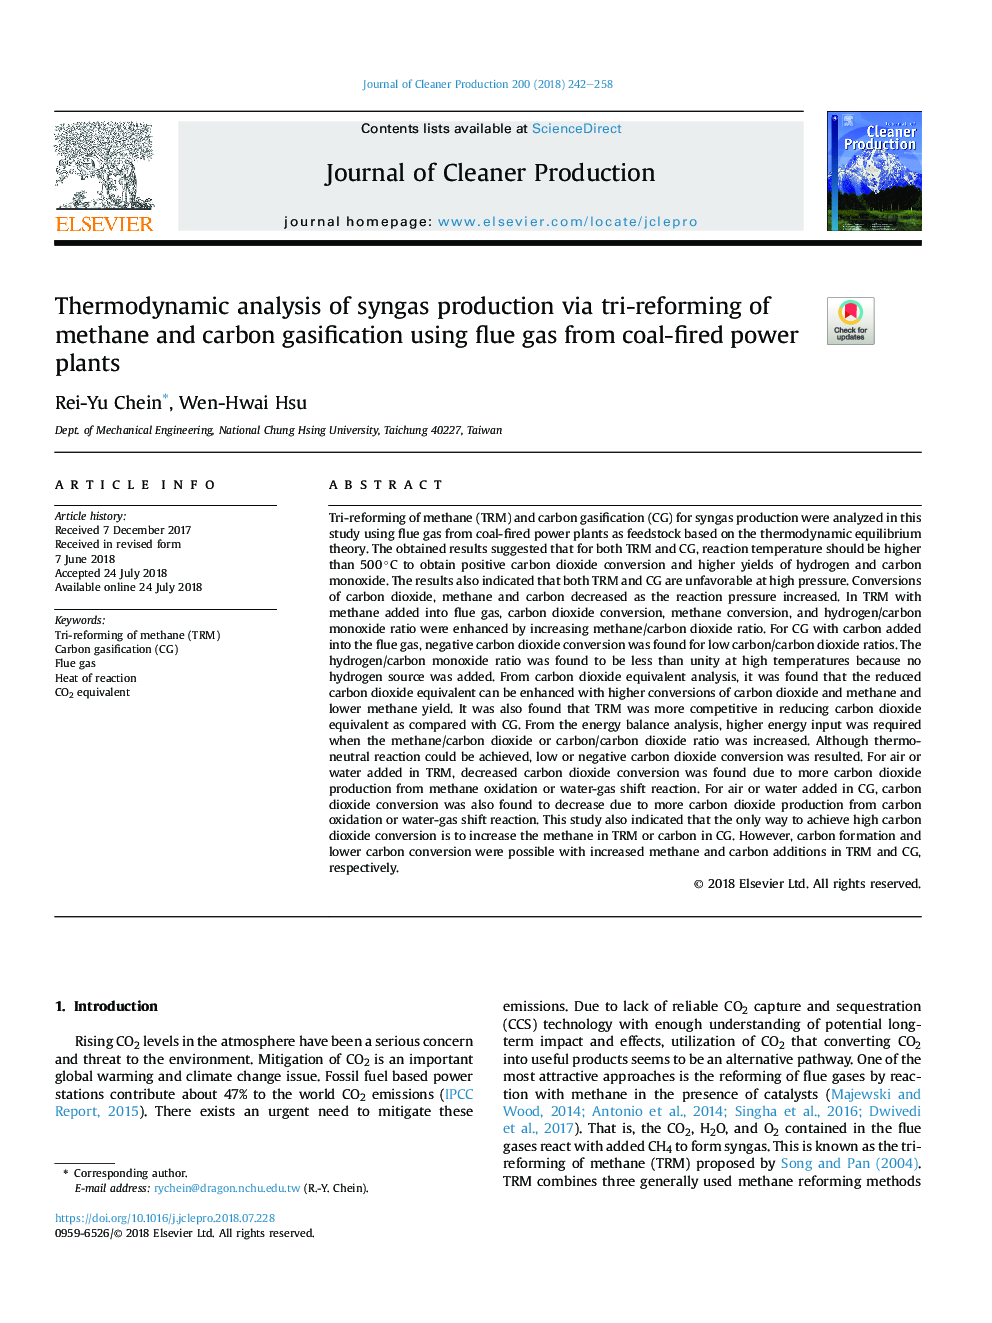 تجزیه و تحلیل ترمودینامیکی تولید همزمان گاز با استفاده از سه روش اصلاح گازاژن متان و کربن با استفاده از گاز دودکش از نیروگاه های زغال سنگ 